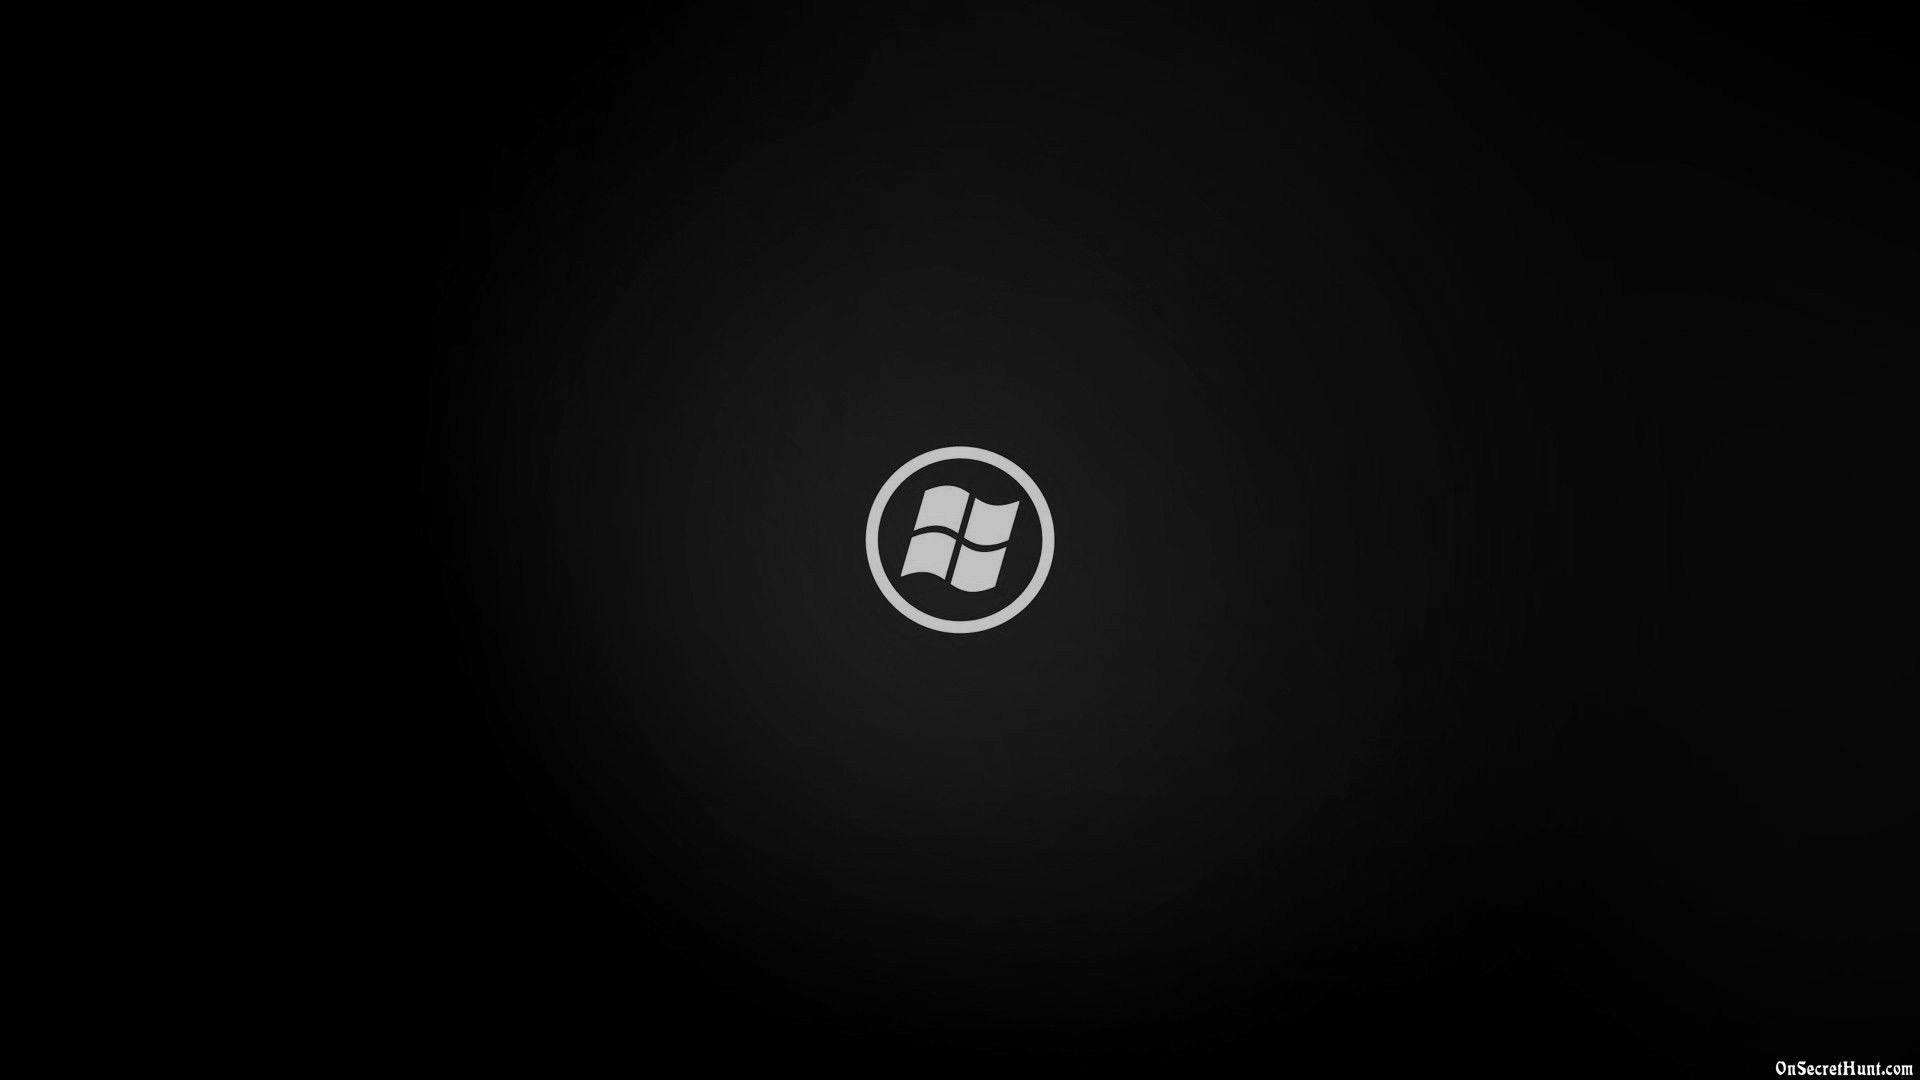 Dark Windows Logo - View the Dark Side of Windows 10